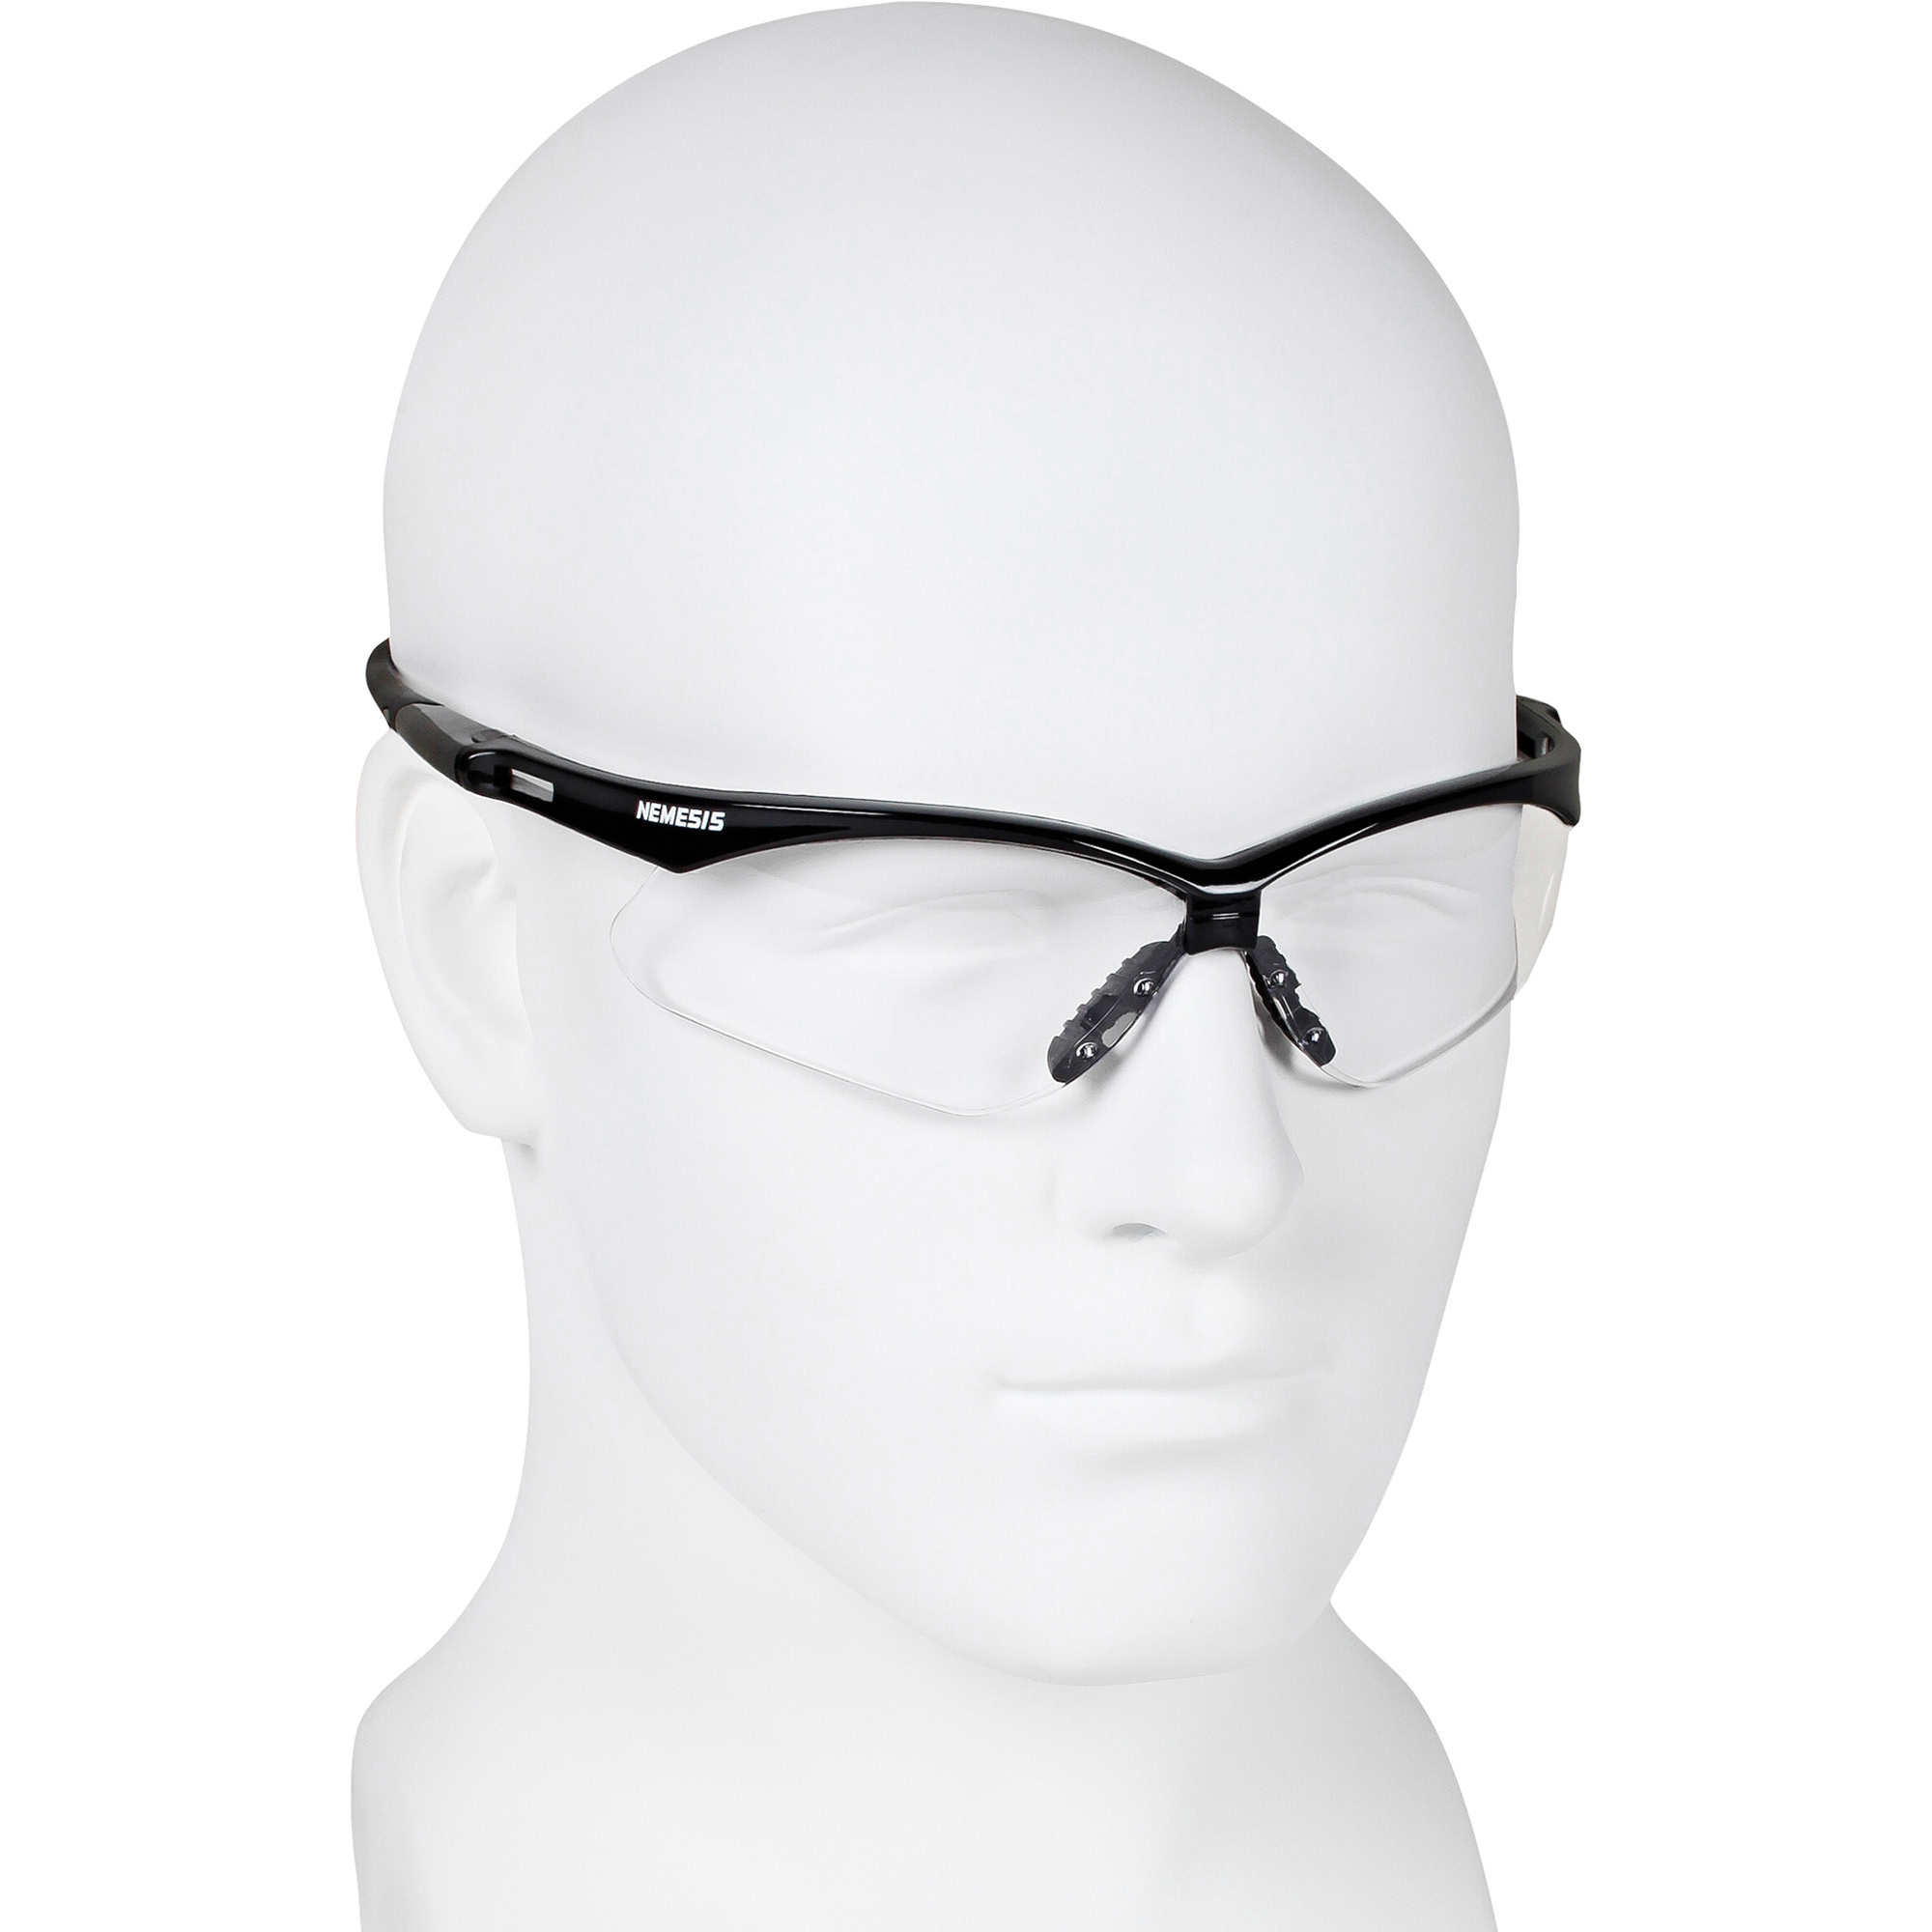 Kleenguard V30 Nemesis Safety Eyewear Eye Protection Kimberly Clark Corporation